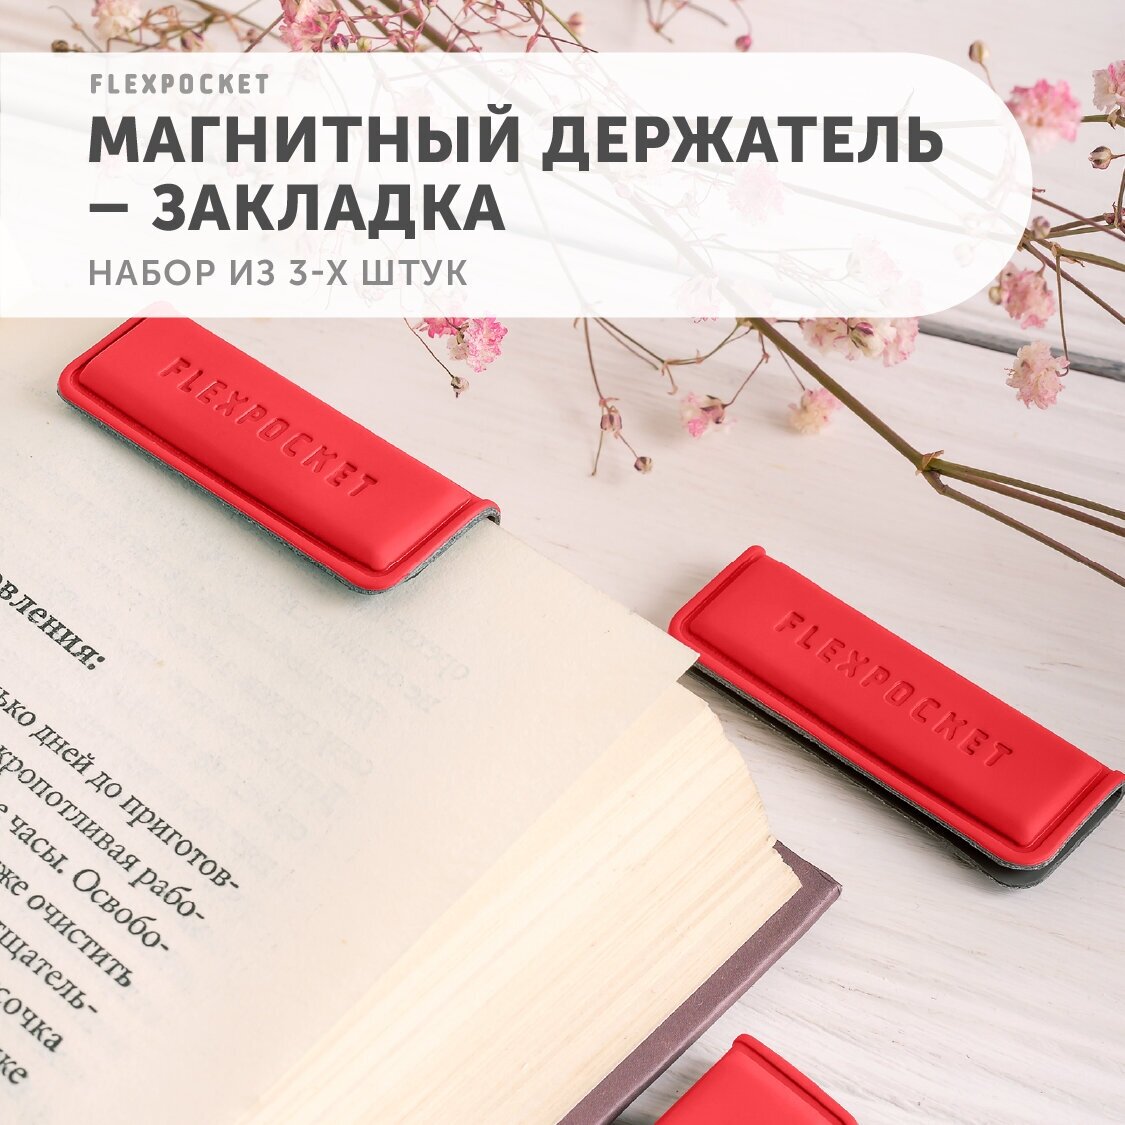 Закладки для книг магнитные, держатель из экокожи Flexpocket, набор из 3 шт, цвет красный